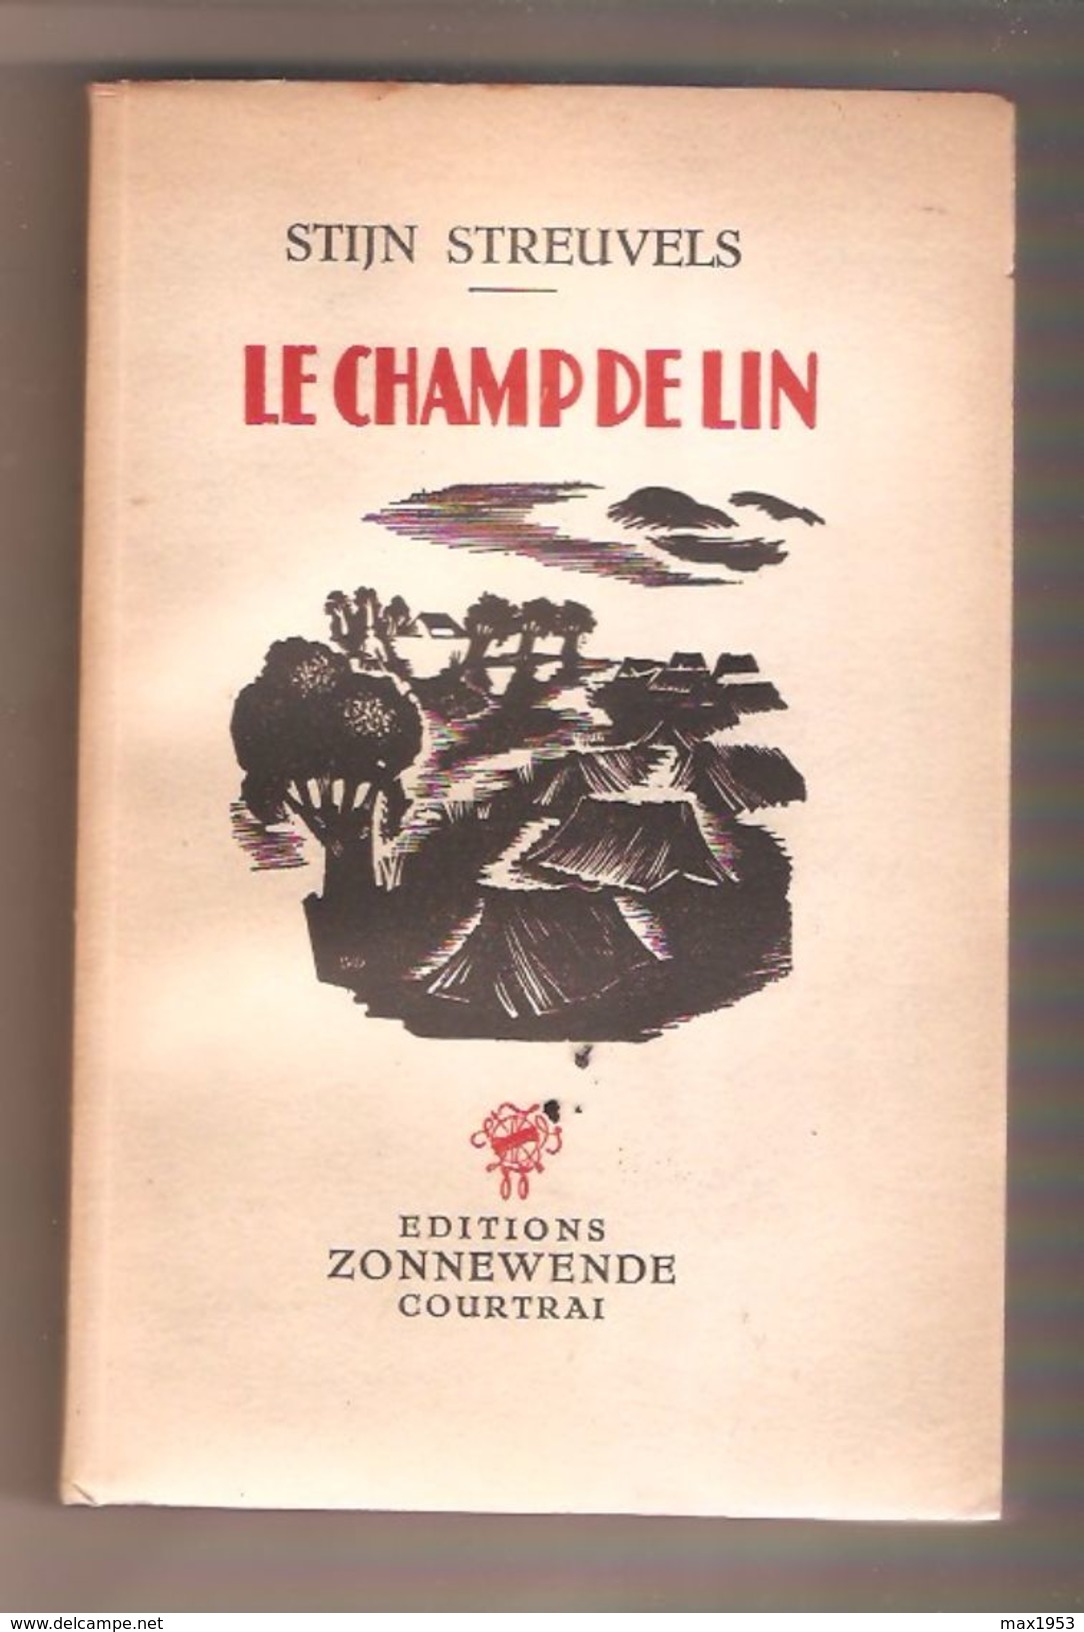 STIJN STREUVELS - LE CHAMP DE LIN - Editions Zonnewende, Courtrai, 1943 - Auteurs Belges